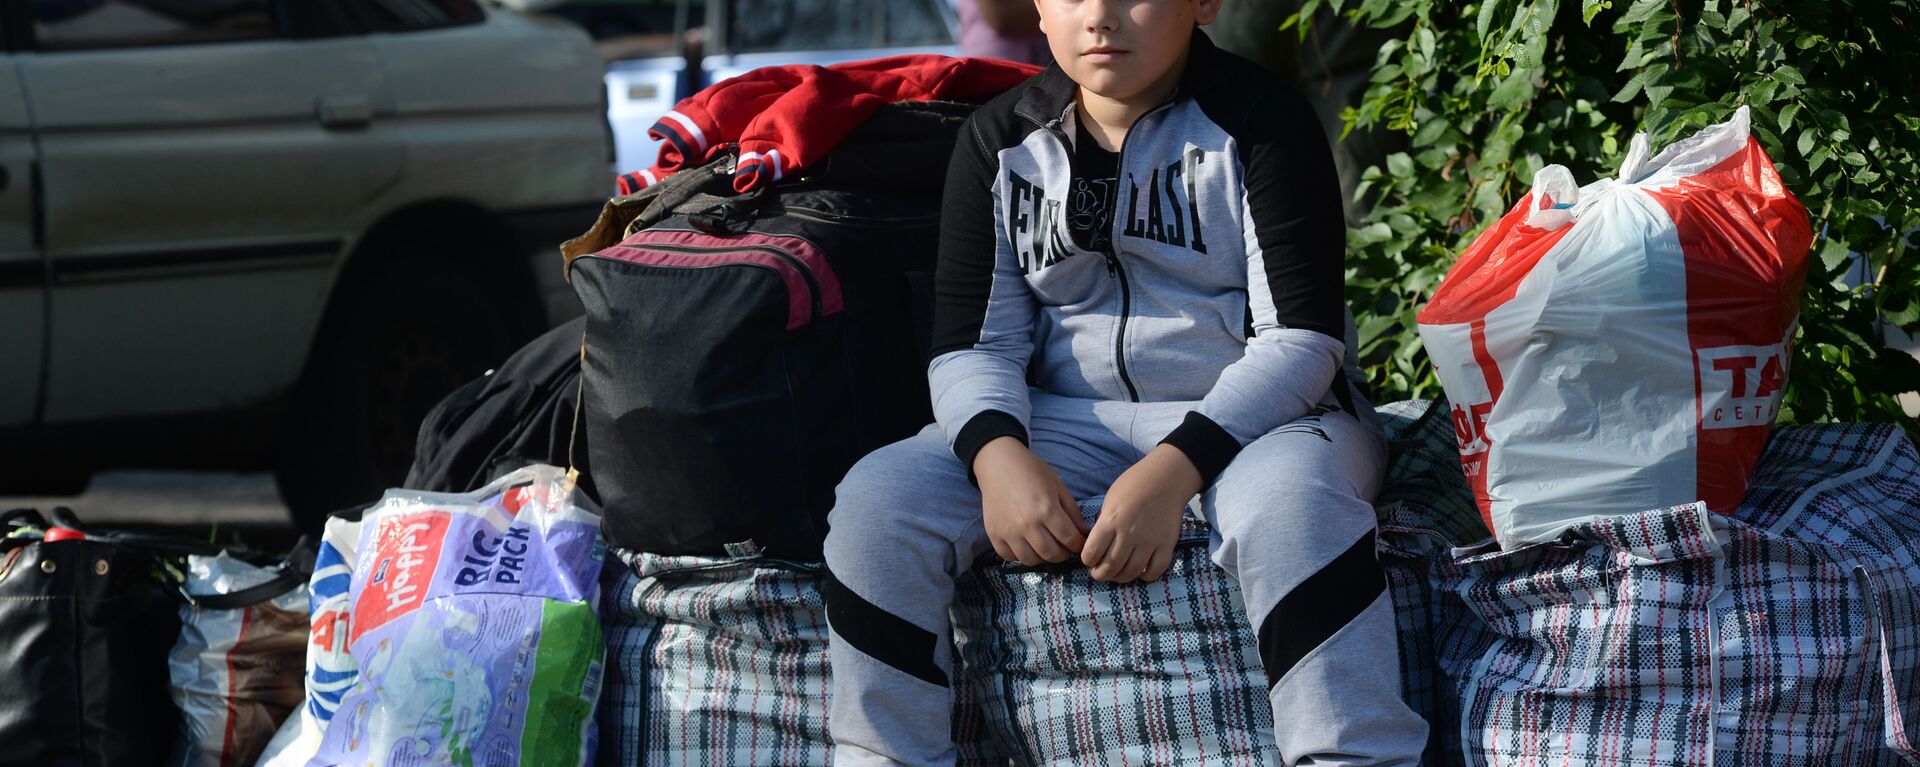 Cậu bé từ vùng Donetsk trước khi lên chuyến xe đưa người tị nạn đến Nga - Sputnik Việt Nam, 1920, 28.08.2022